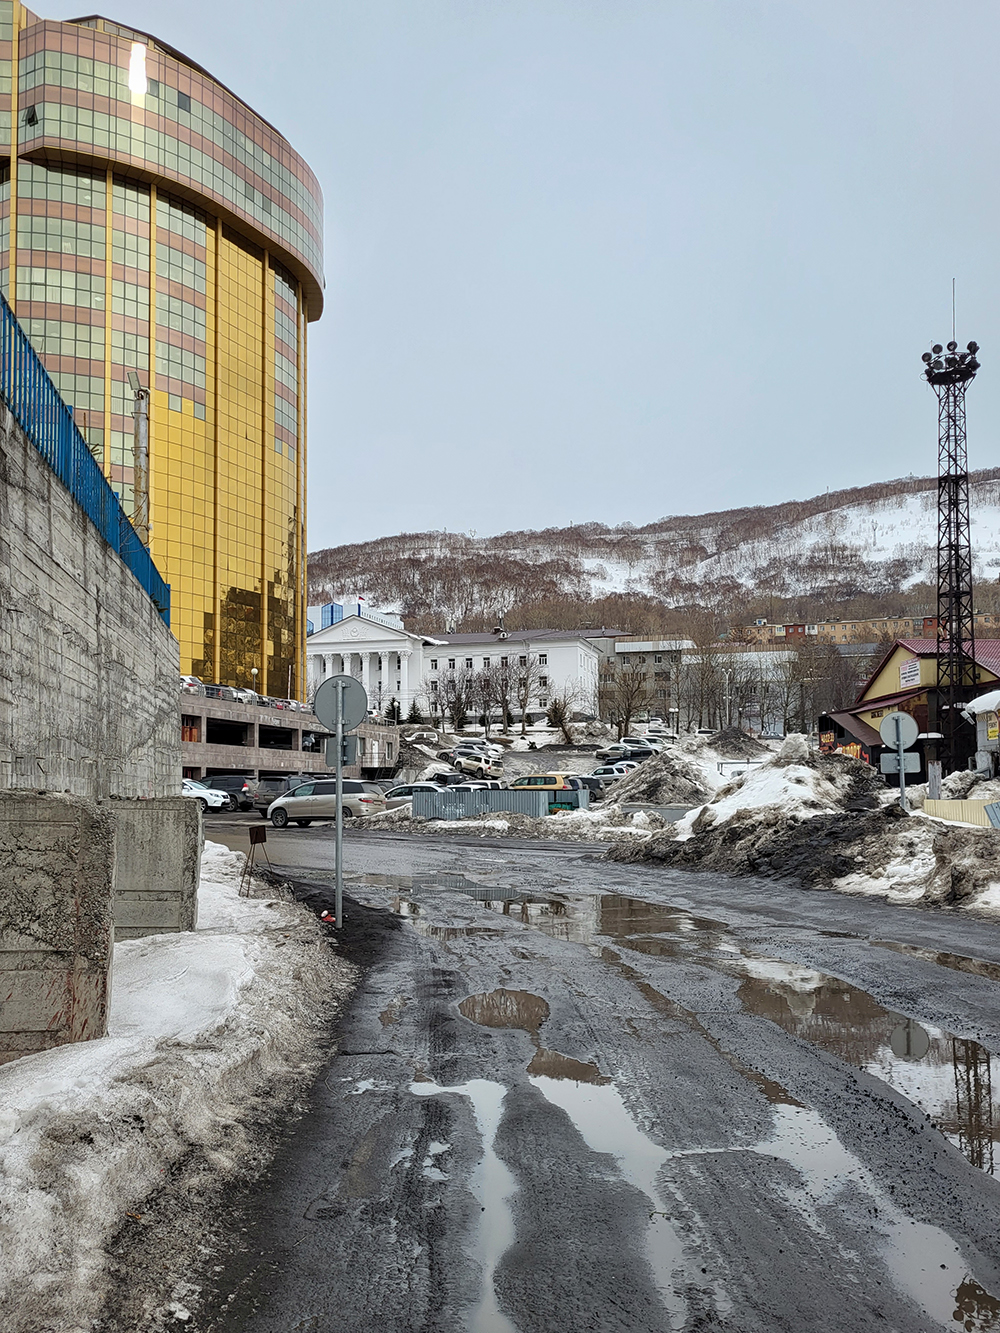 Центр города: в «золотой» высотке расположен офис ВТБ, за ним виднеется здание Камчатского краевого суда